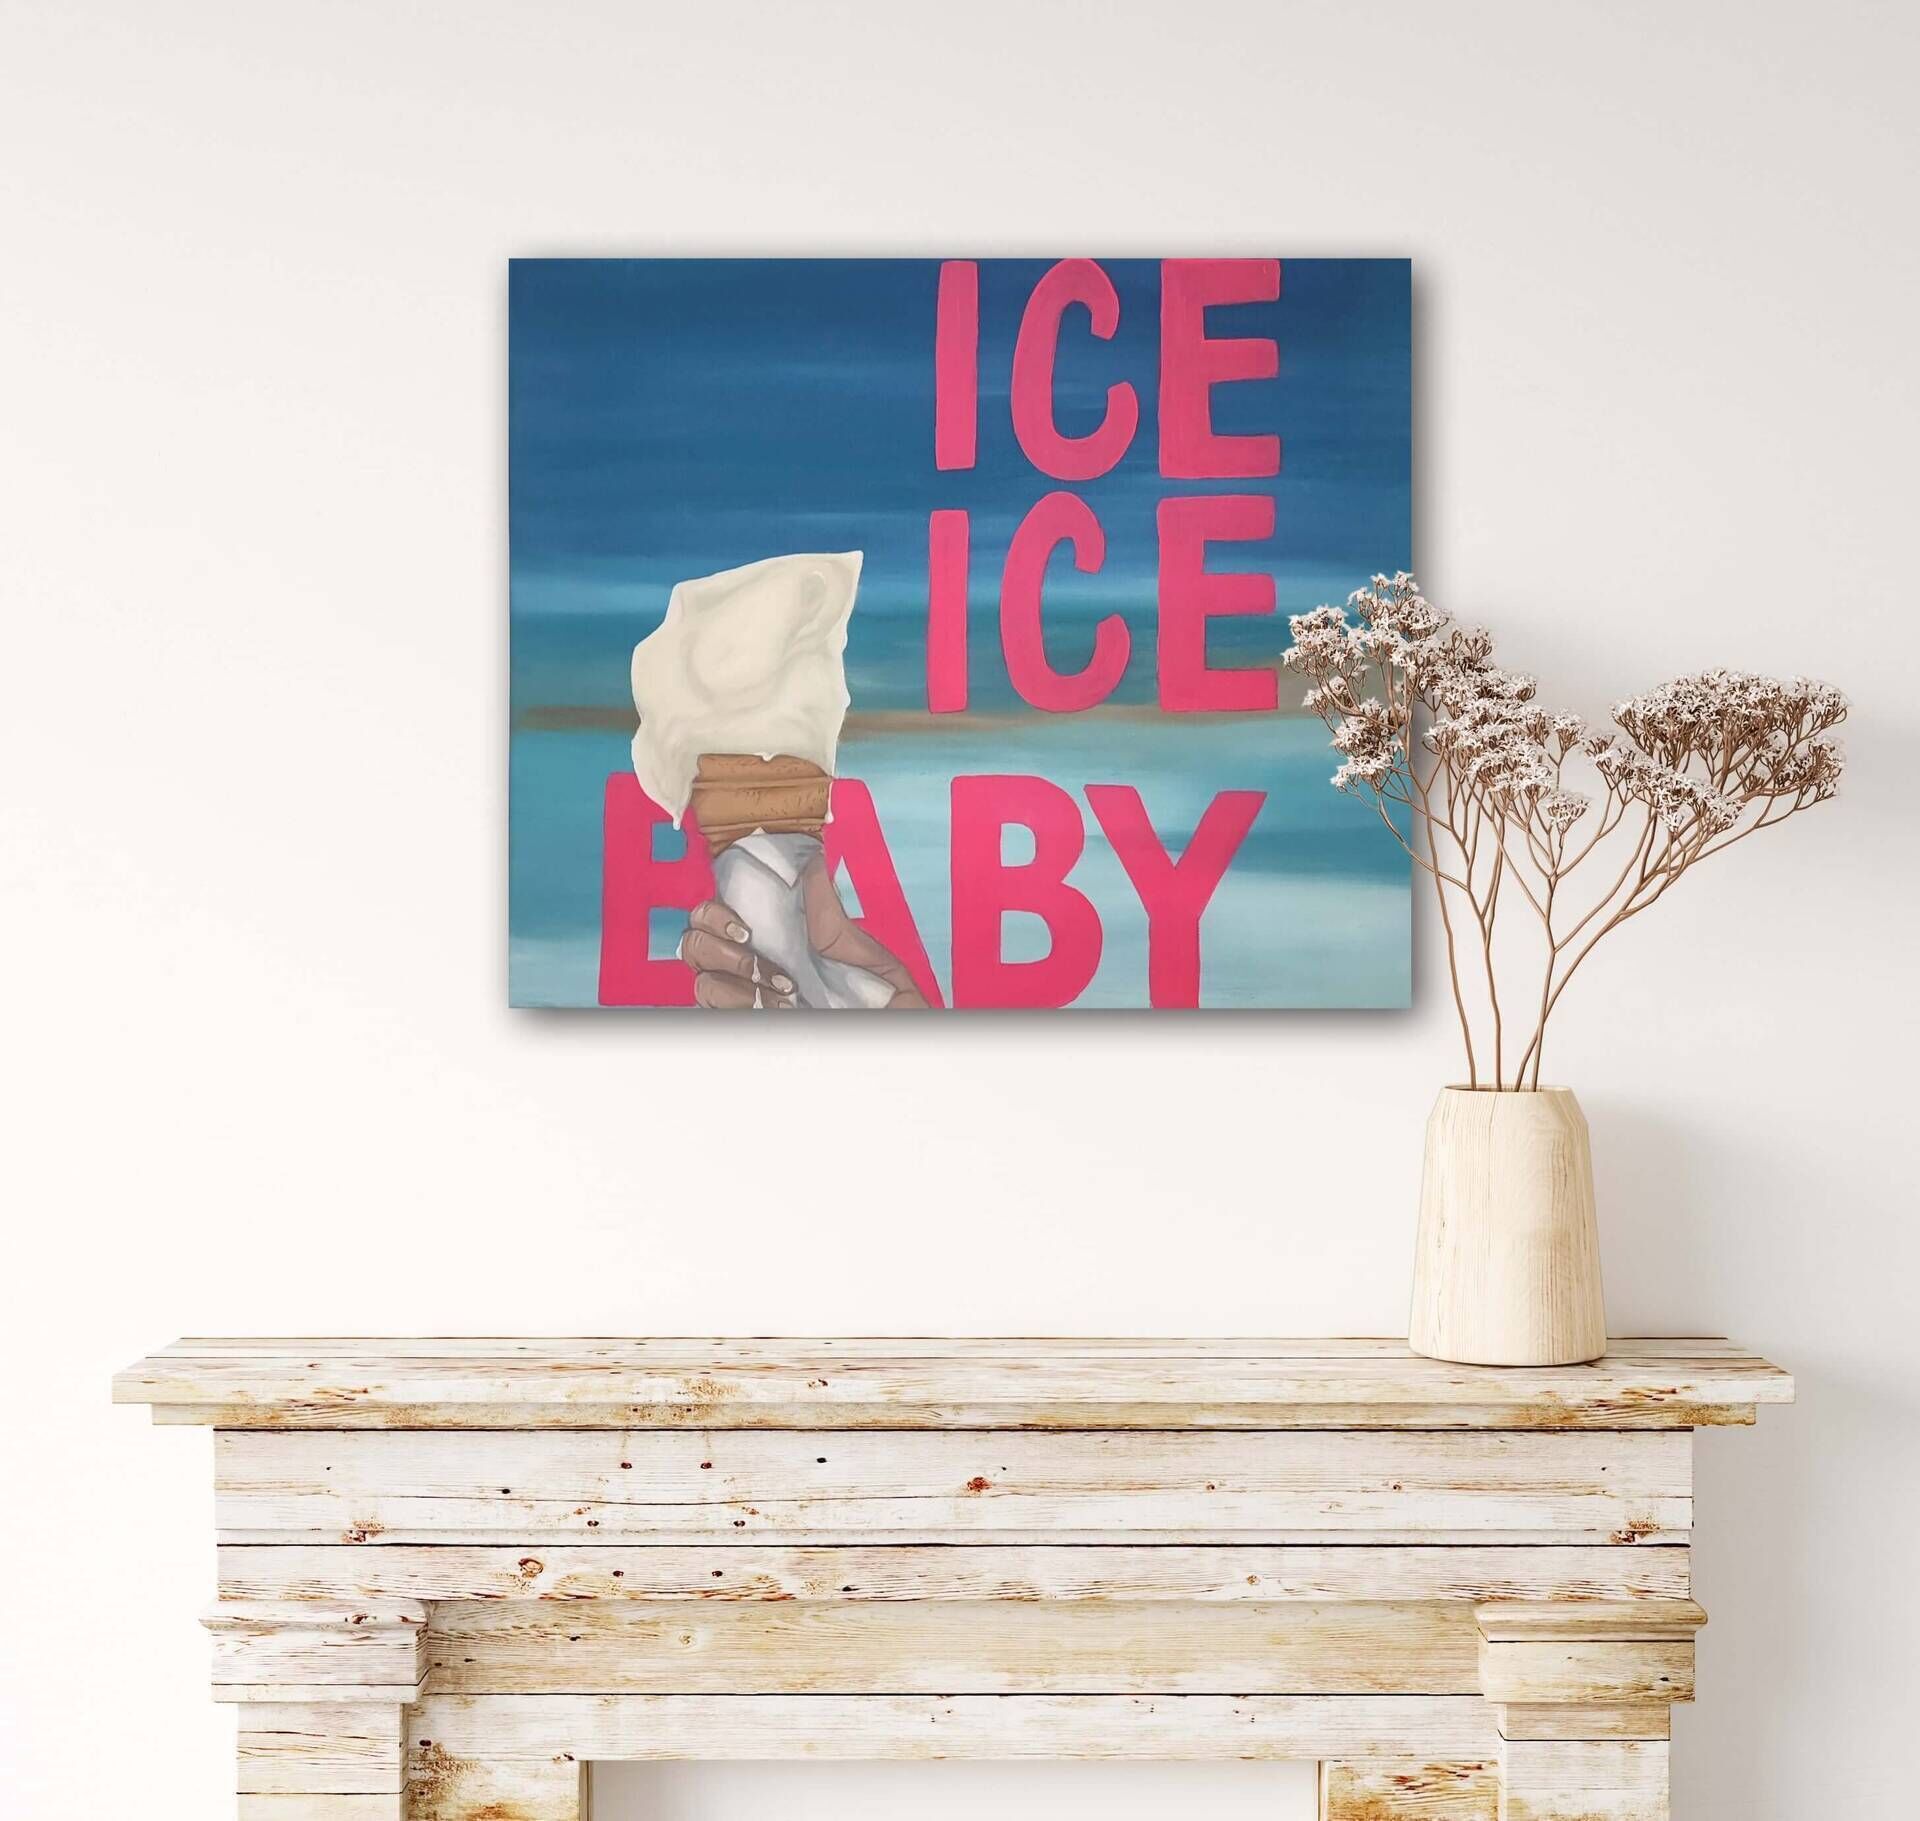 ICE ICE BABY 